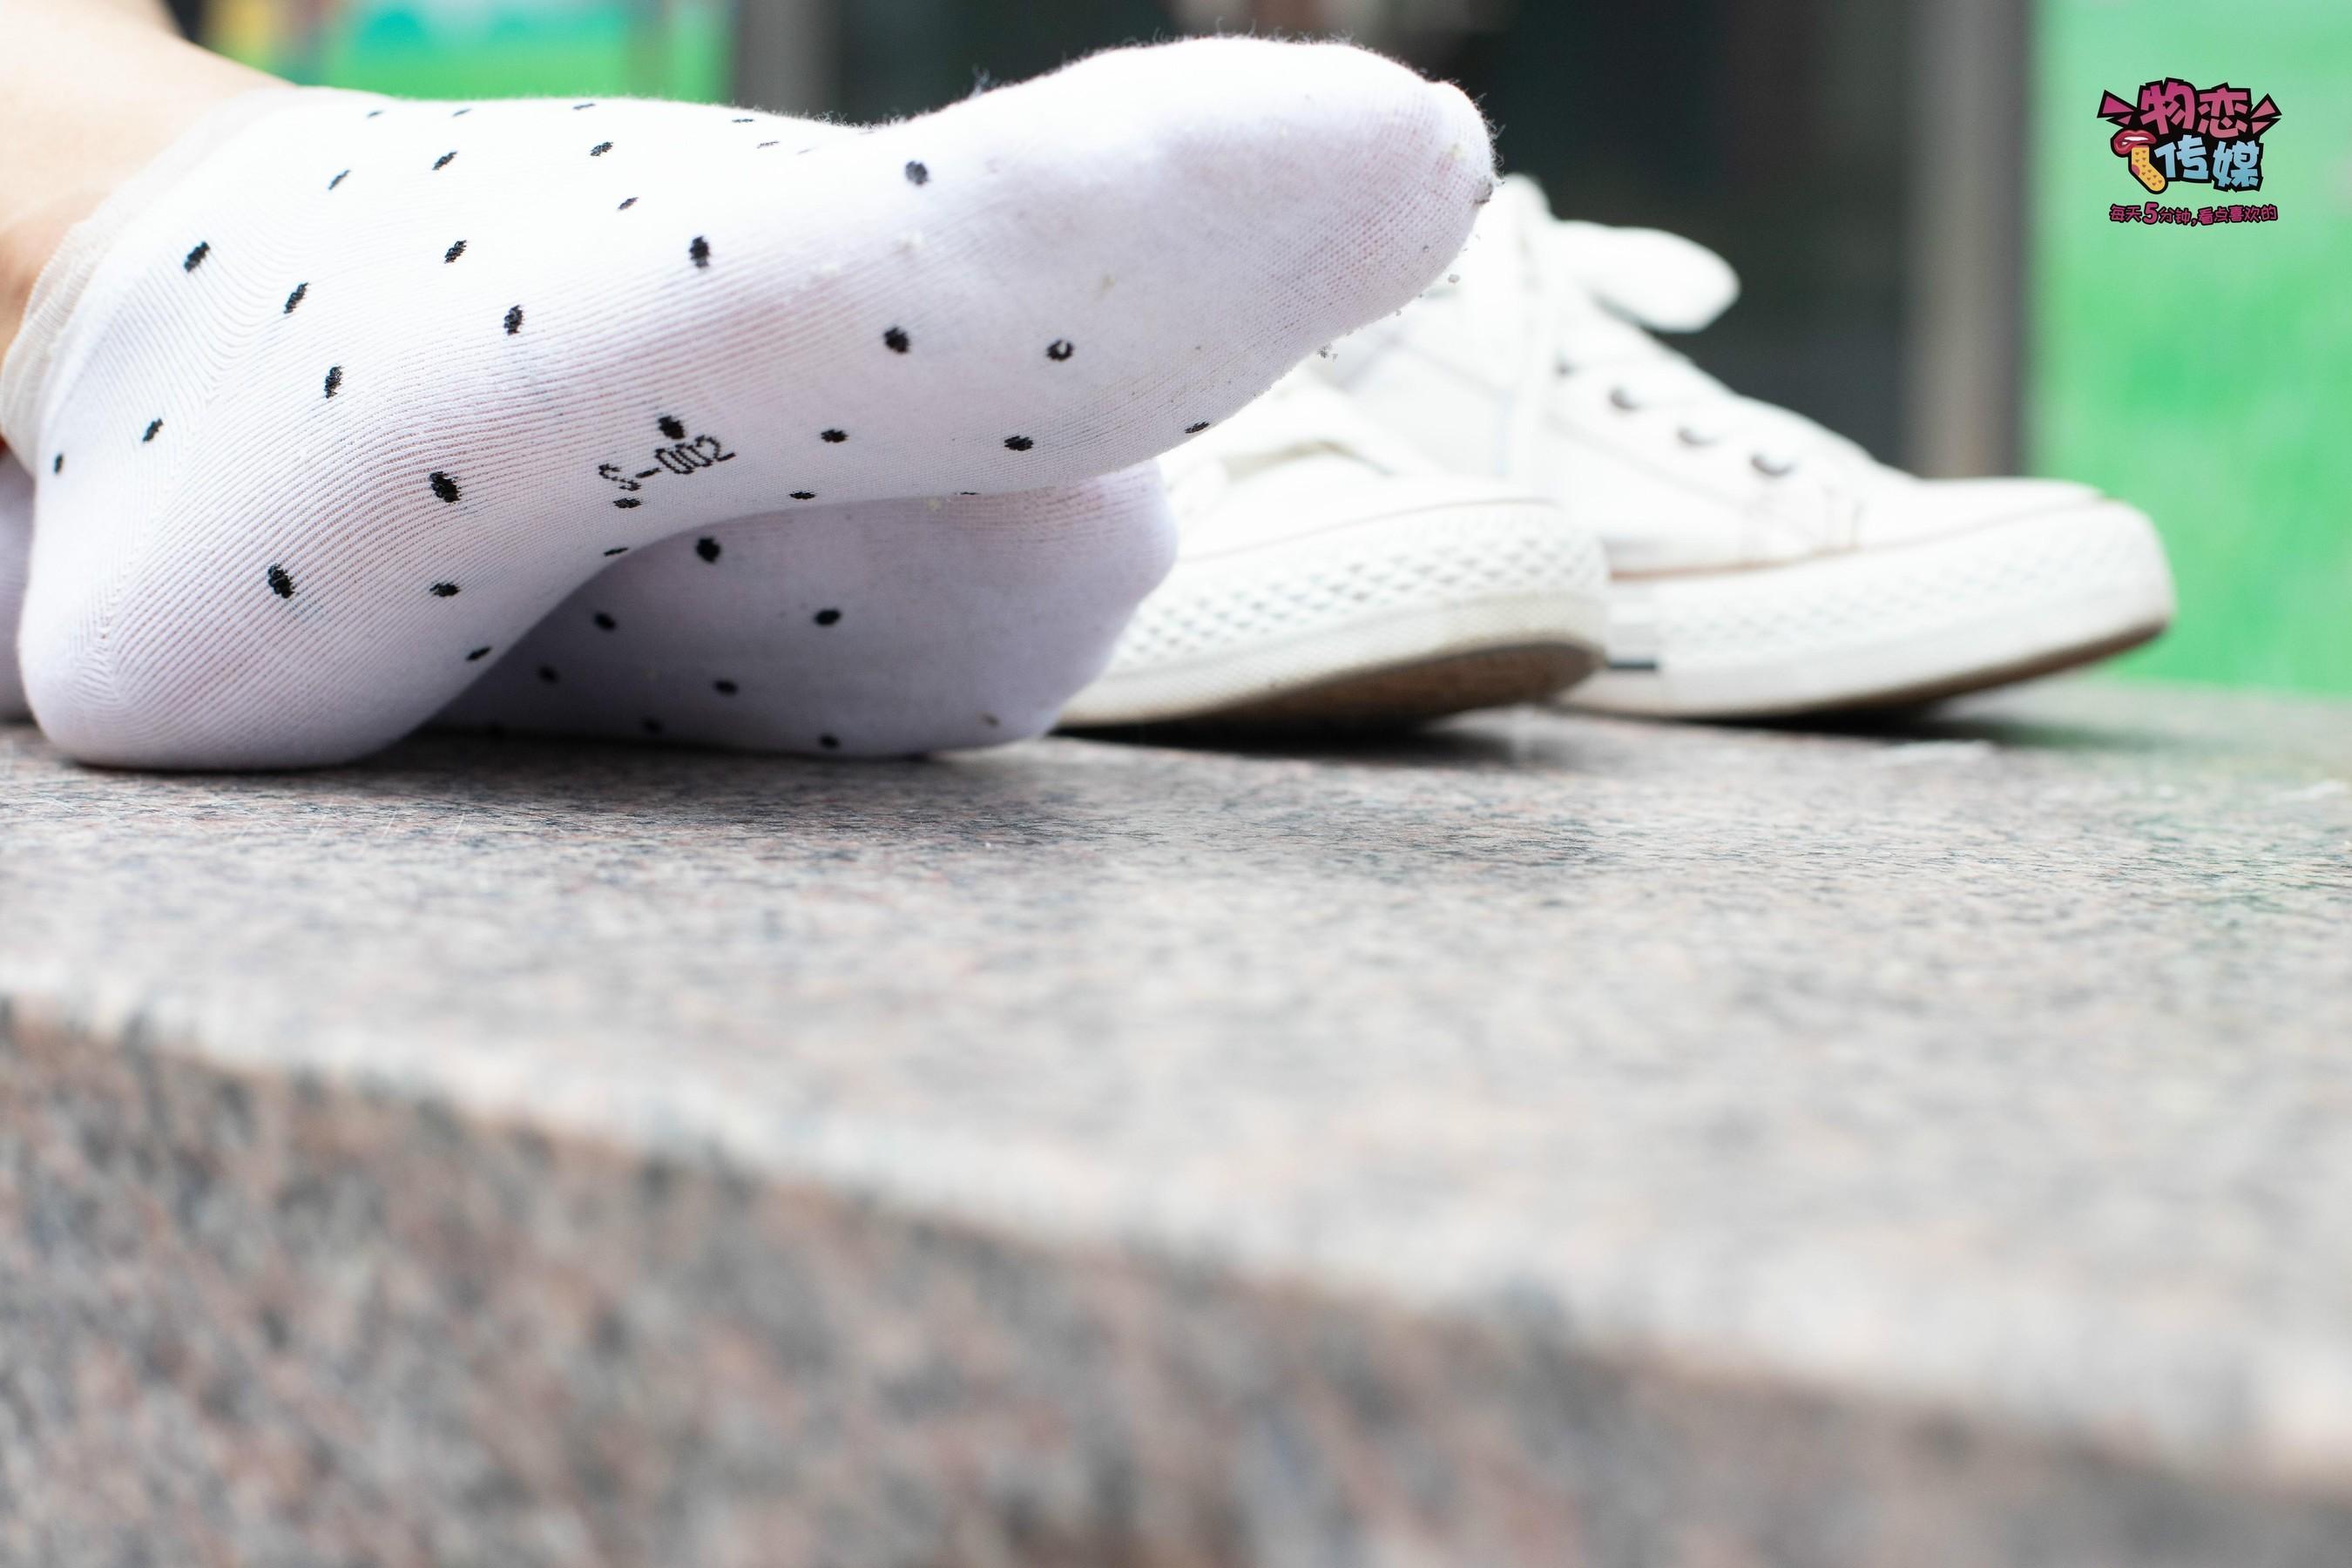 物恋传媒 No.51 俏皮露肩T恤搭配粉色小短裙白色板鞋配白色斑点袜[23] [56P]插图